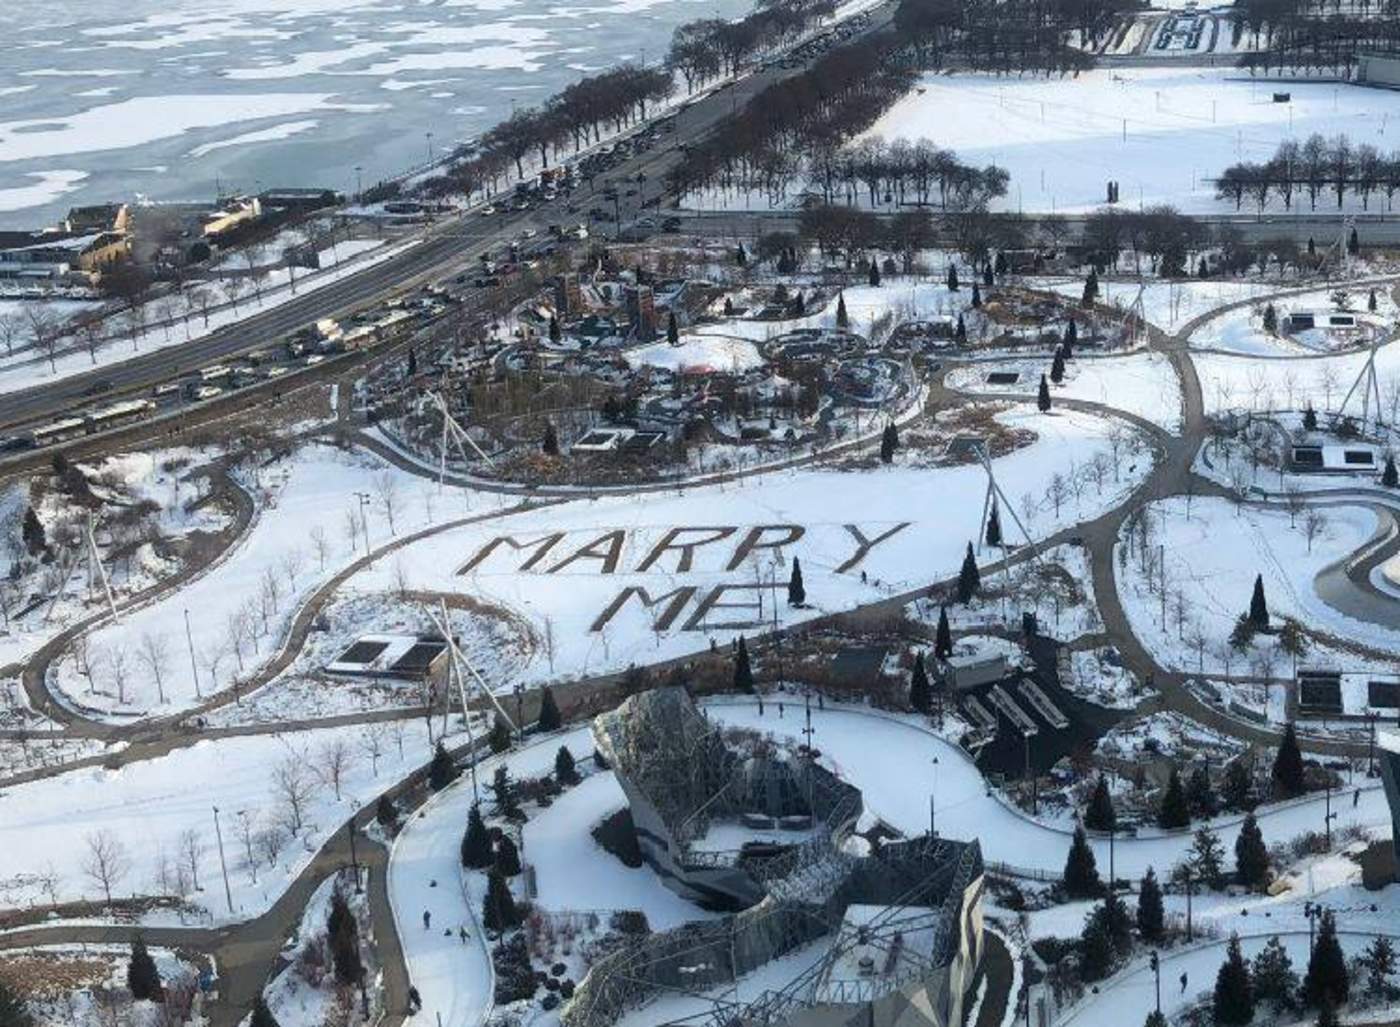 Llamativa propuesta de matrimonio en la nieve se hace viral